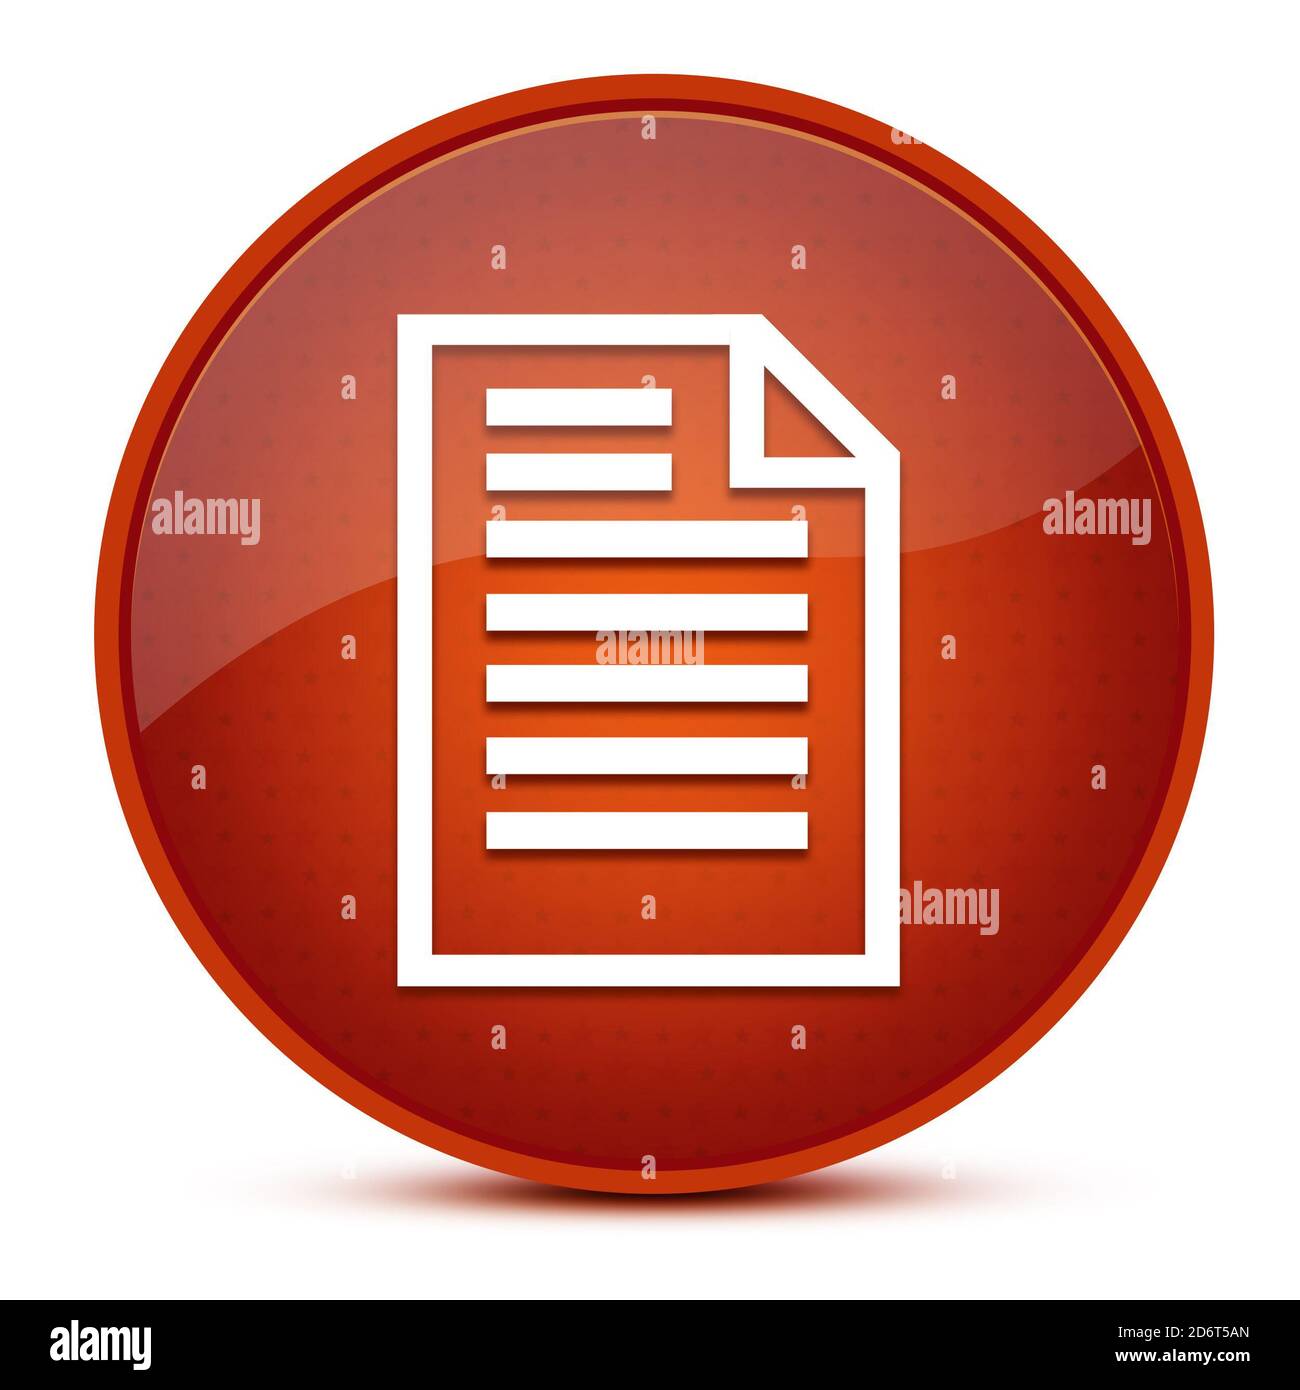 Zitat Seite ästhetische glänzend braun runde Knopf abstrakte Illustration Stockfoto